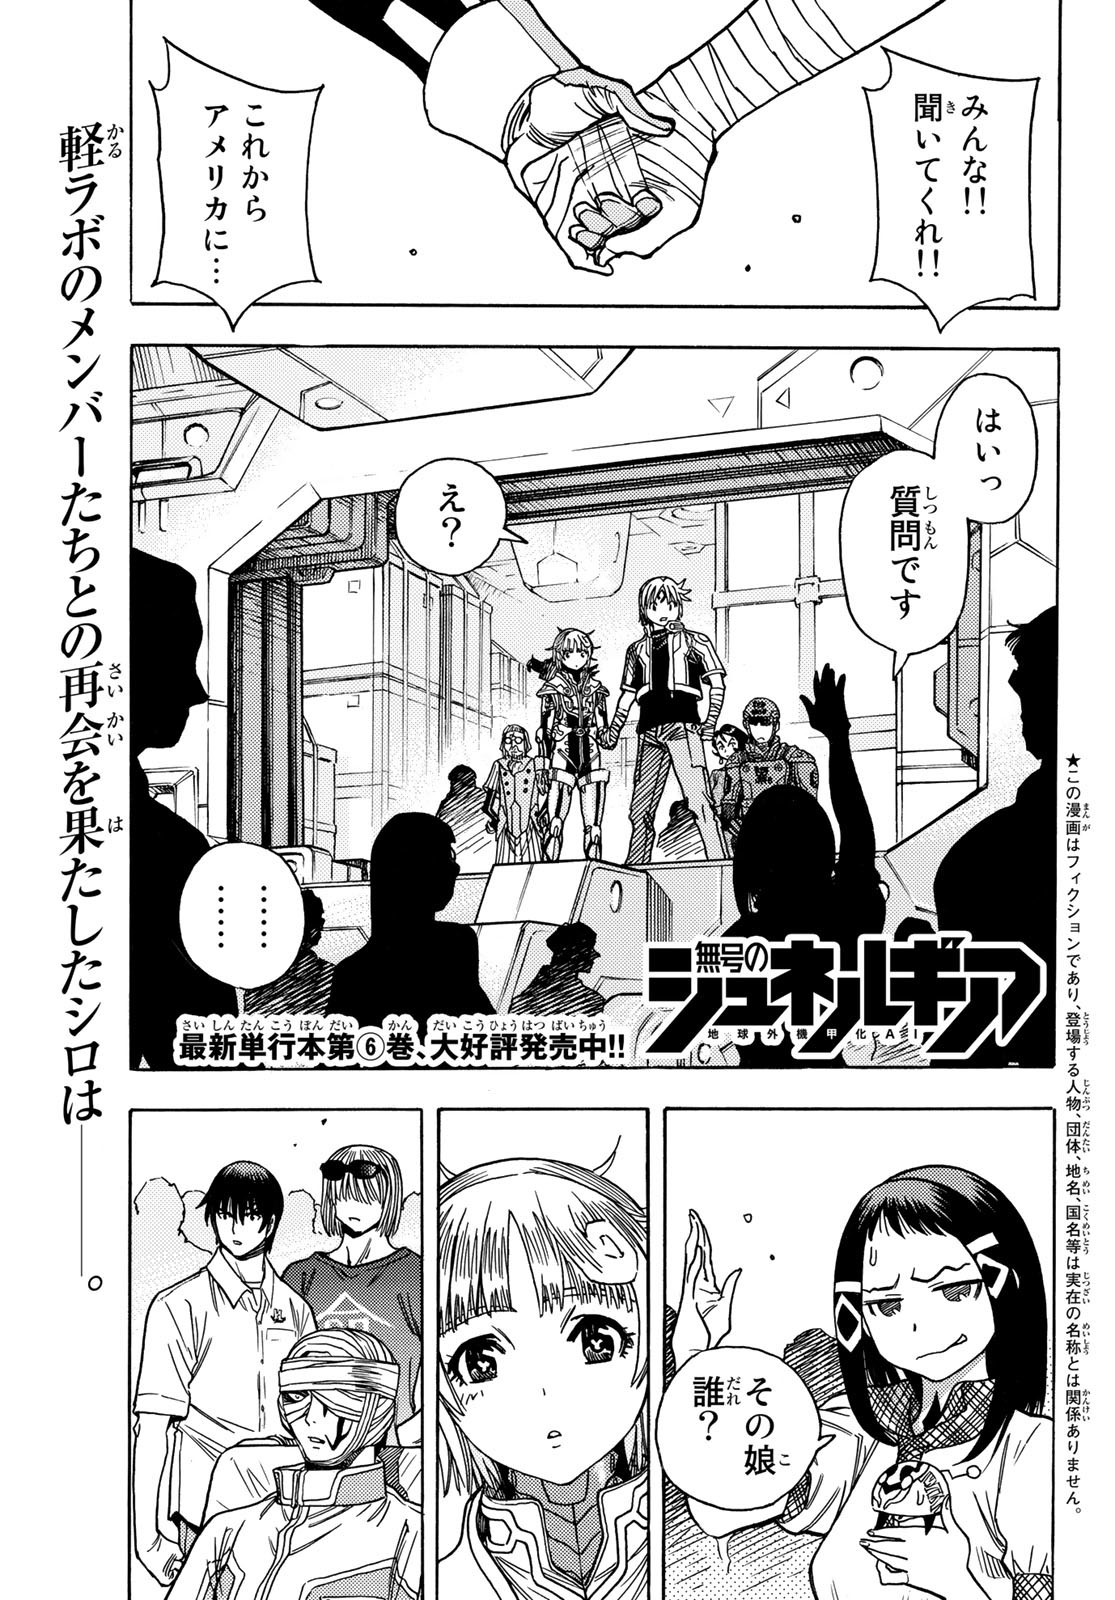 Mugou no Schnell Gear: Chikyuugai Kisouka AI - Chapter 41 - Page 1